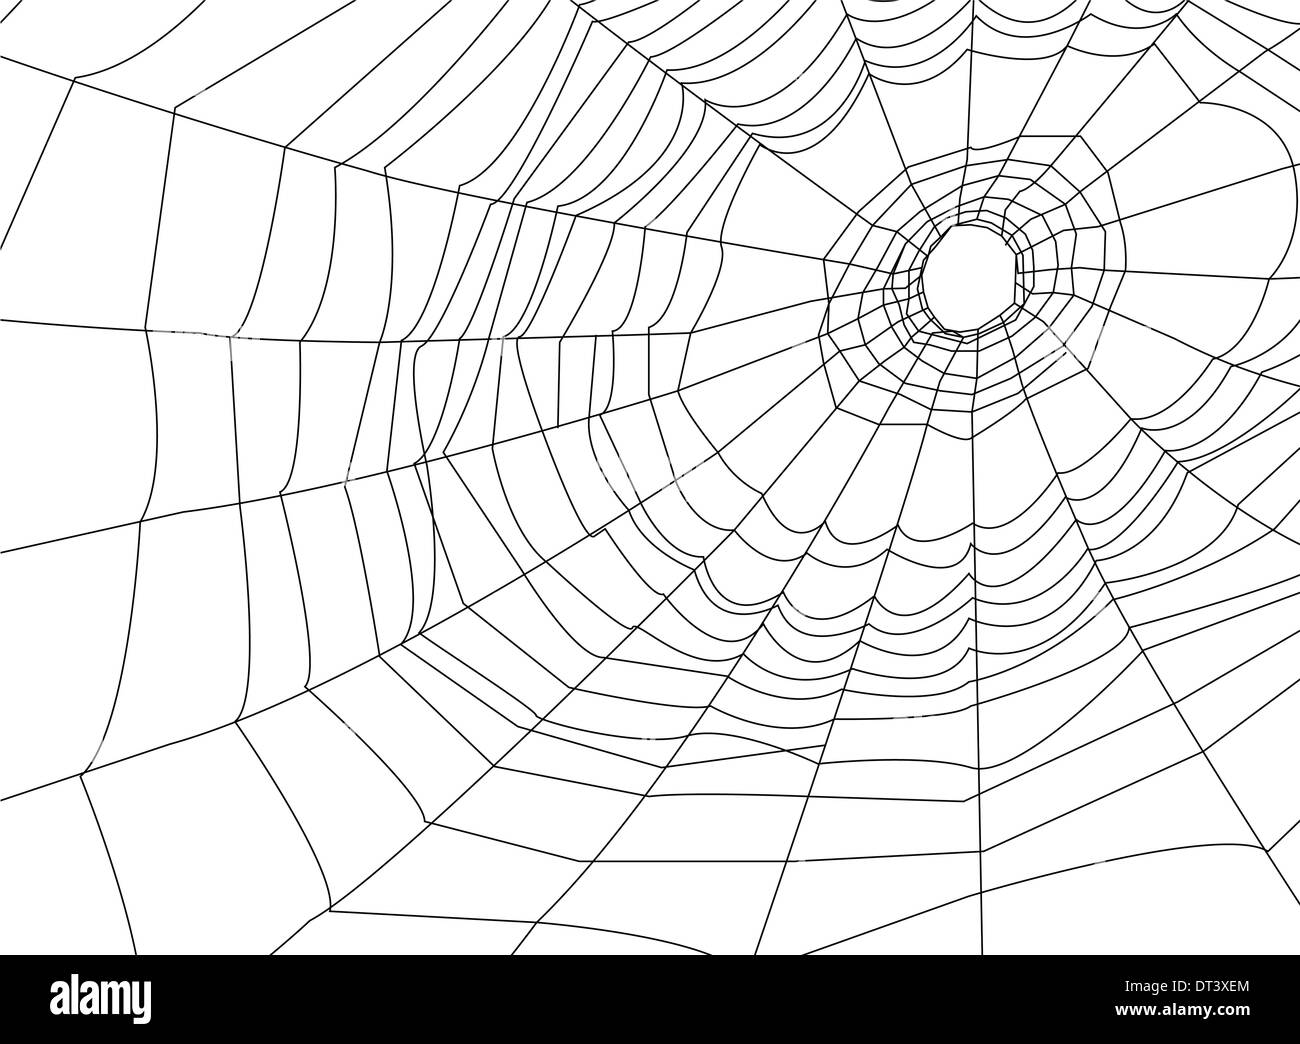 Spider web ou d'araignée Banque D'Images